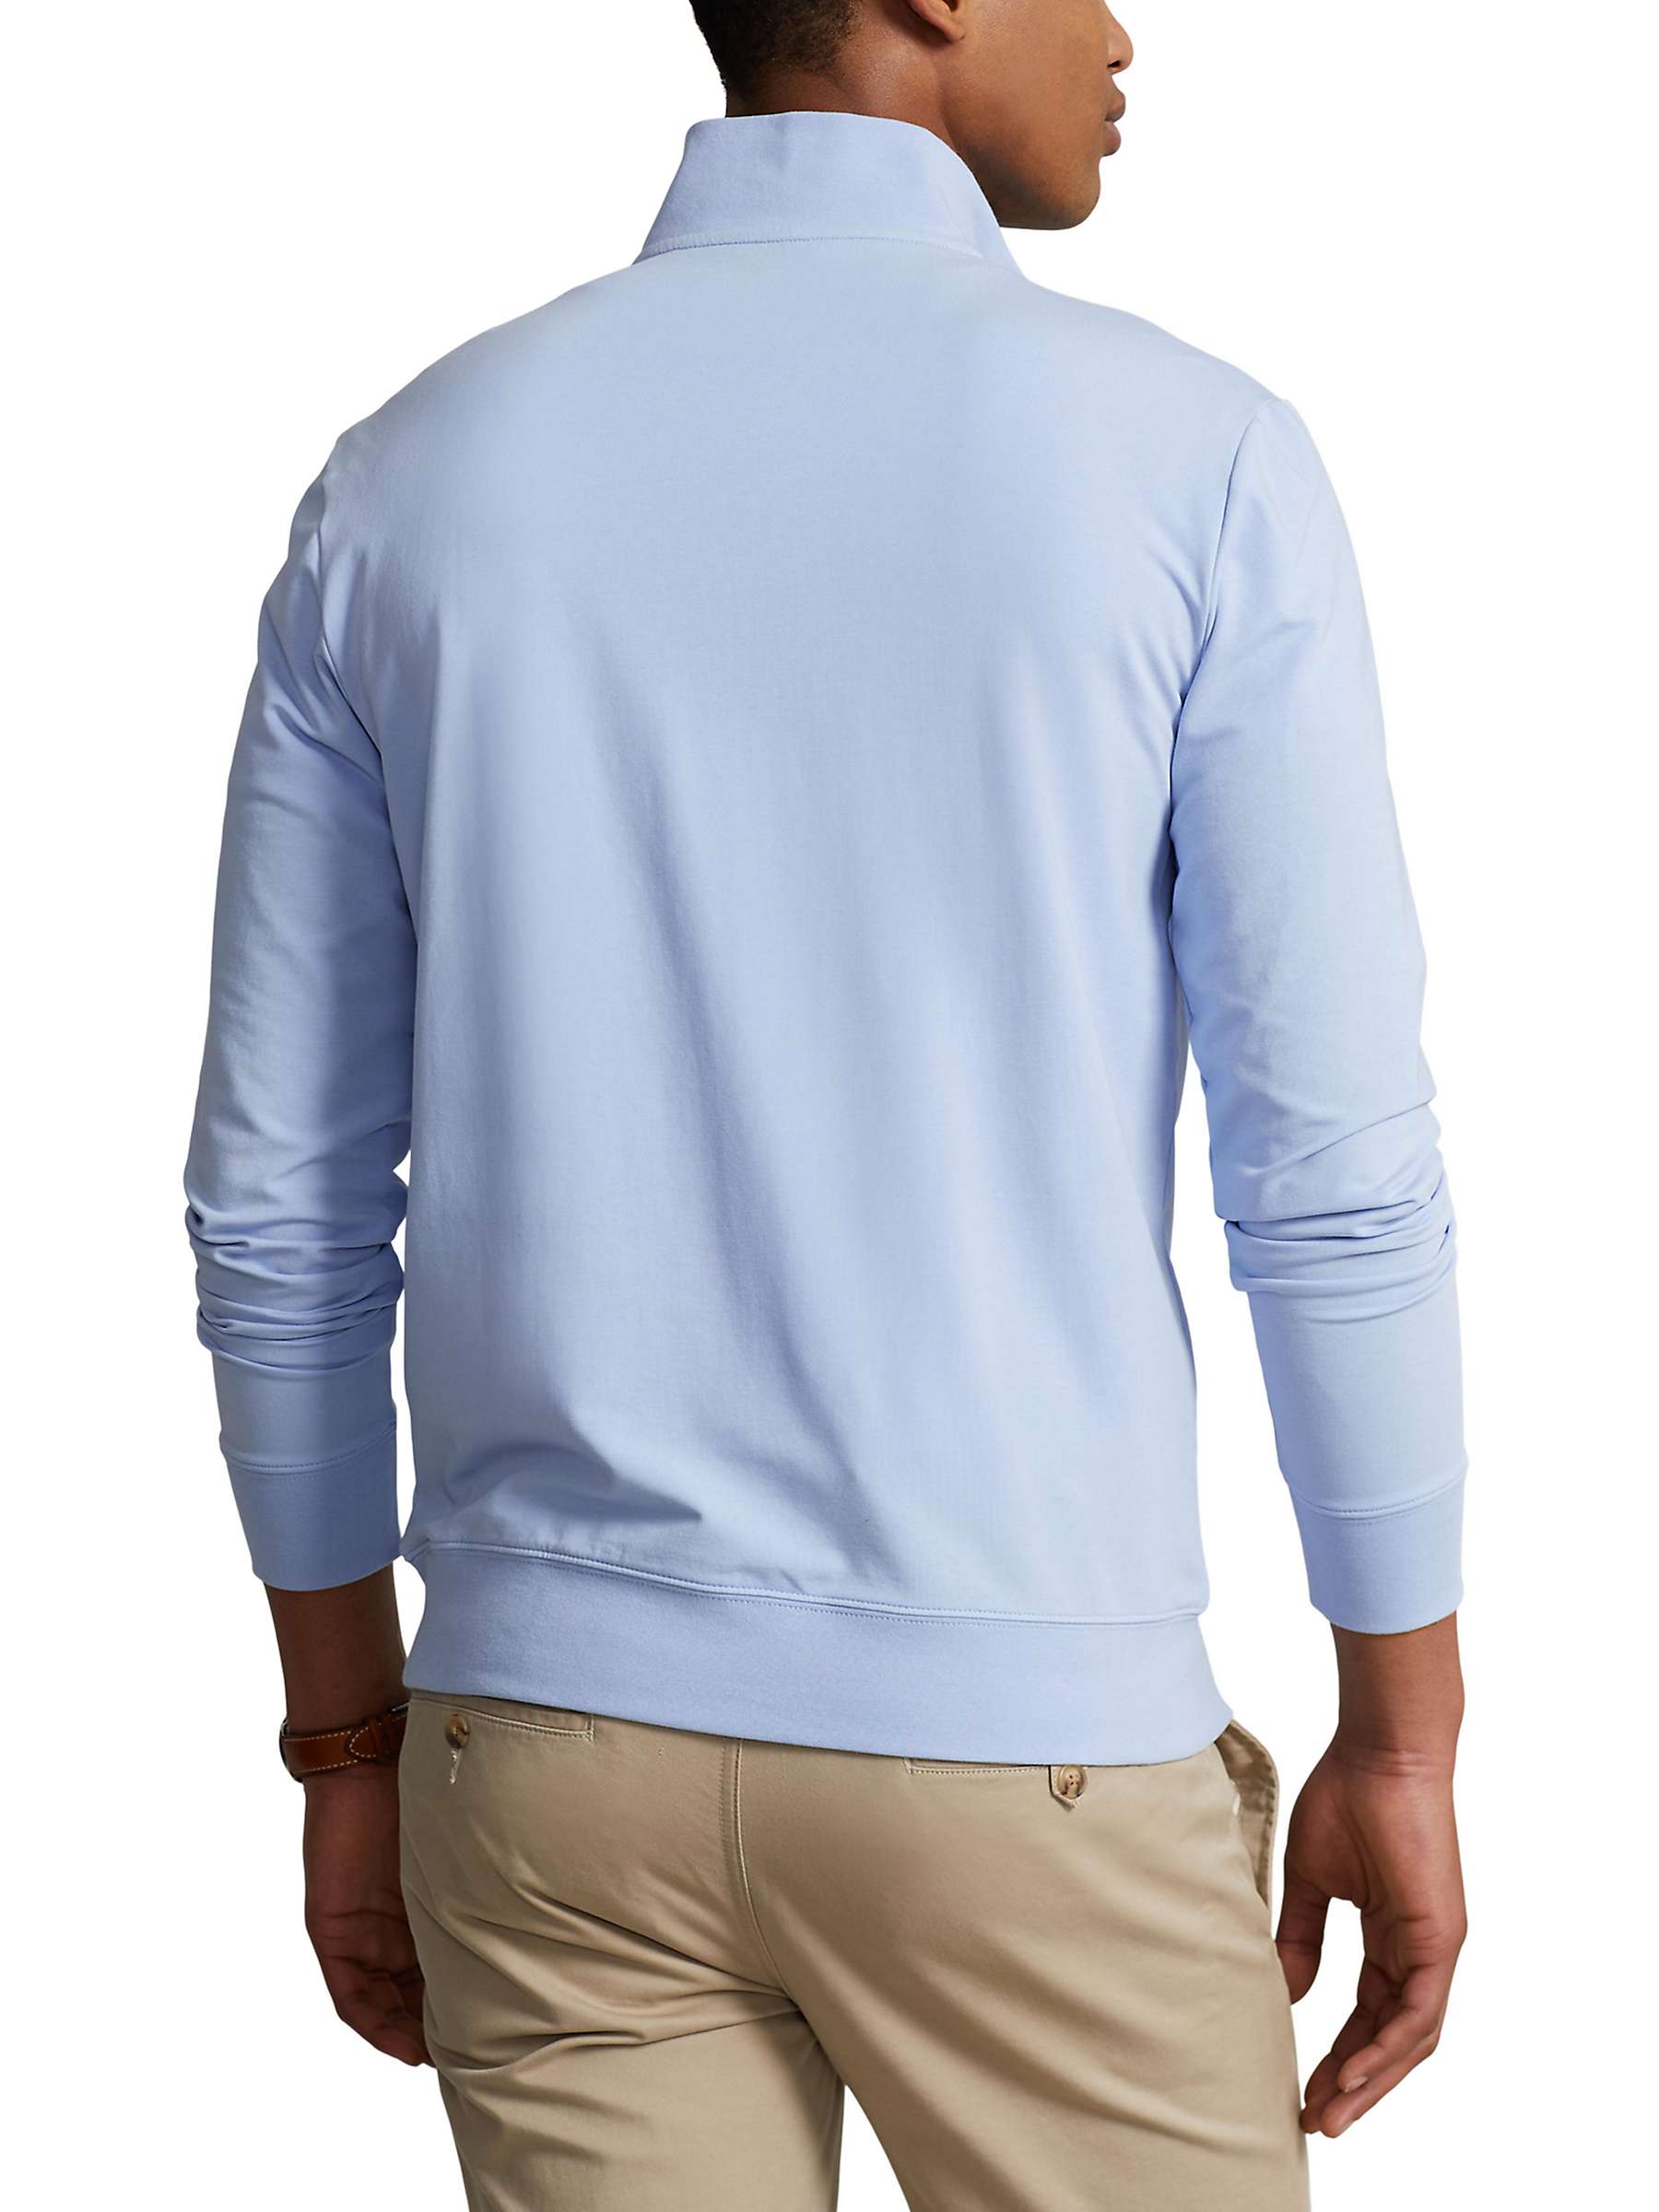 Buy Polo Ralph Lauren Long Sleeve Zip Golf Jersey Top, Elite Blue Online at johnlewis.com